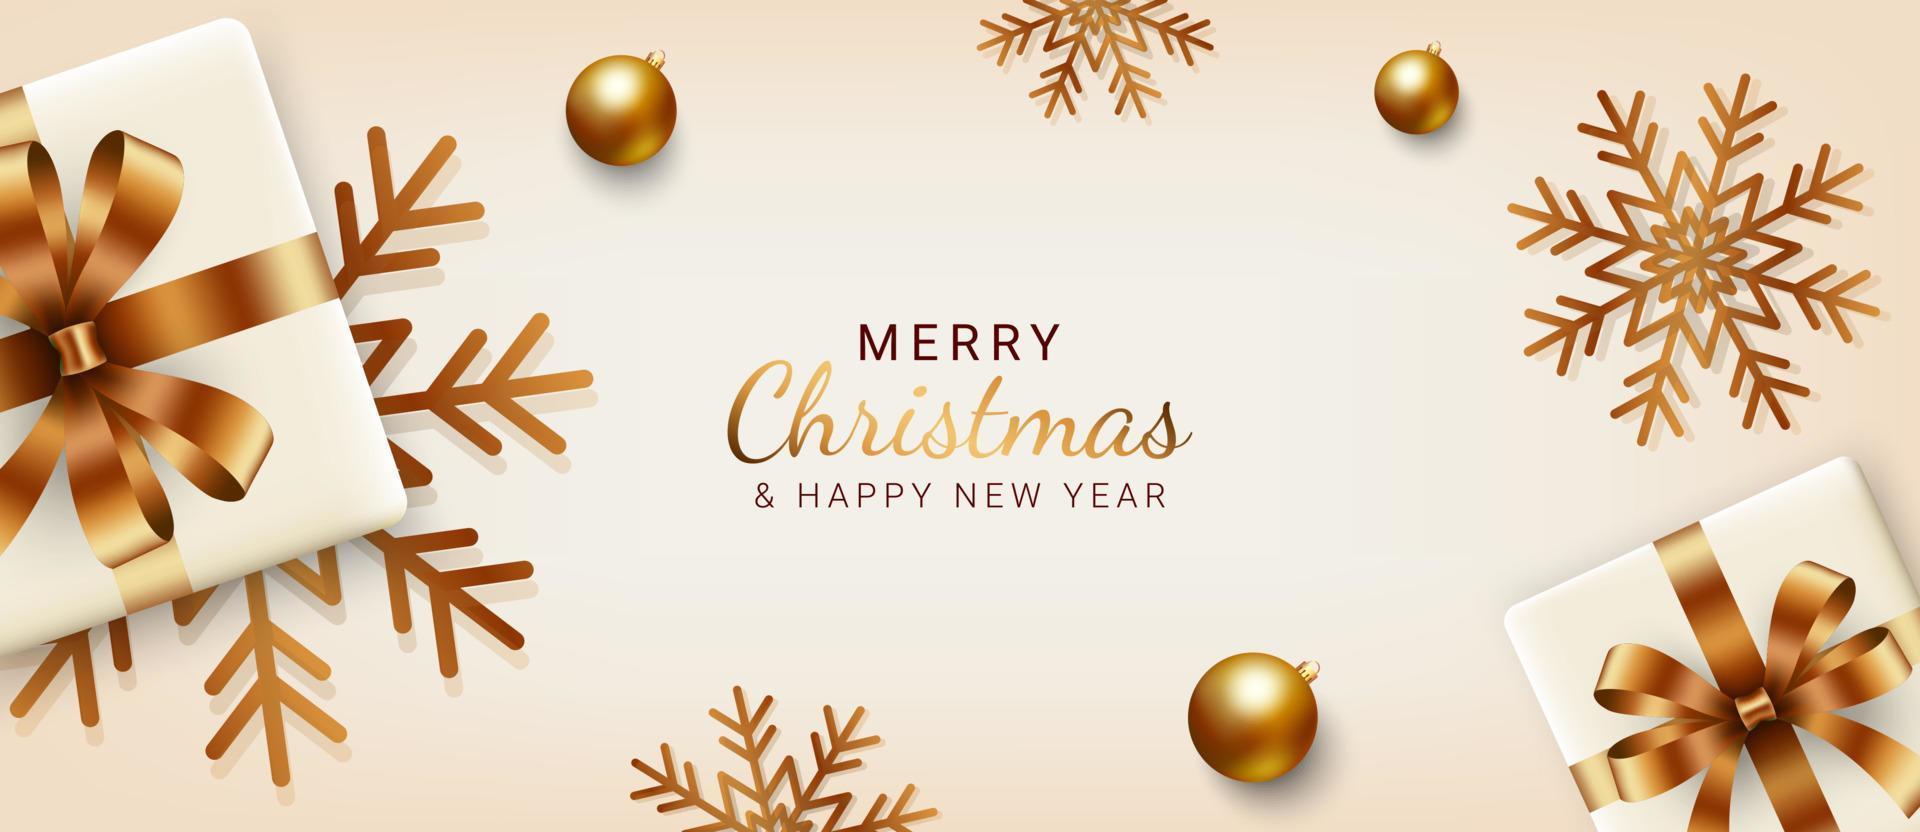 pancartas de navidad y año nuevo. diseño de fondo de navidad con cajas de regalo, copos de nieve y bolas doradas. tarjeta de felicitación navideña, póster o web. ilustración vectorial vector